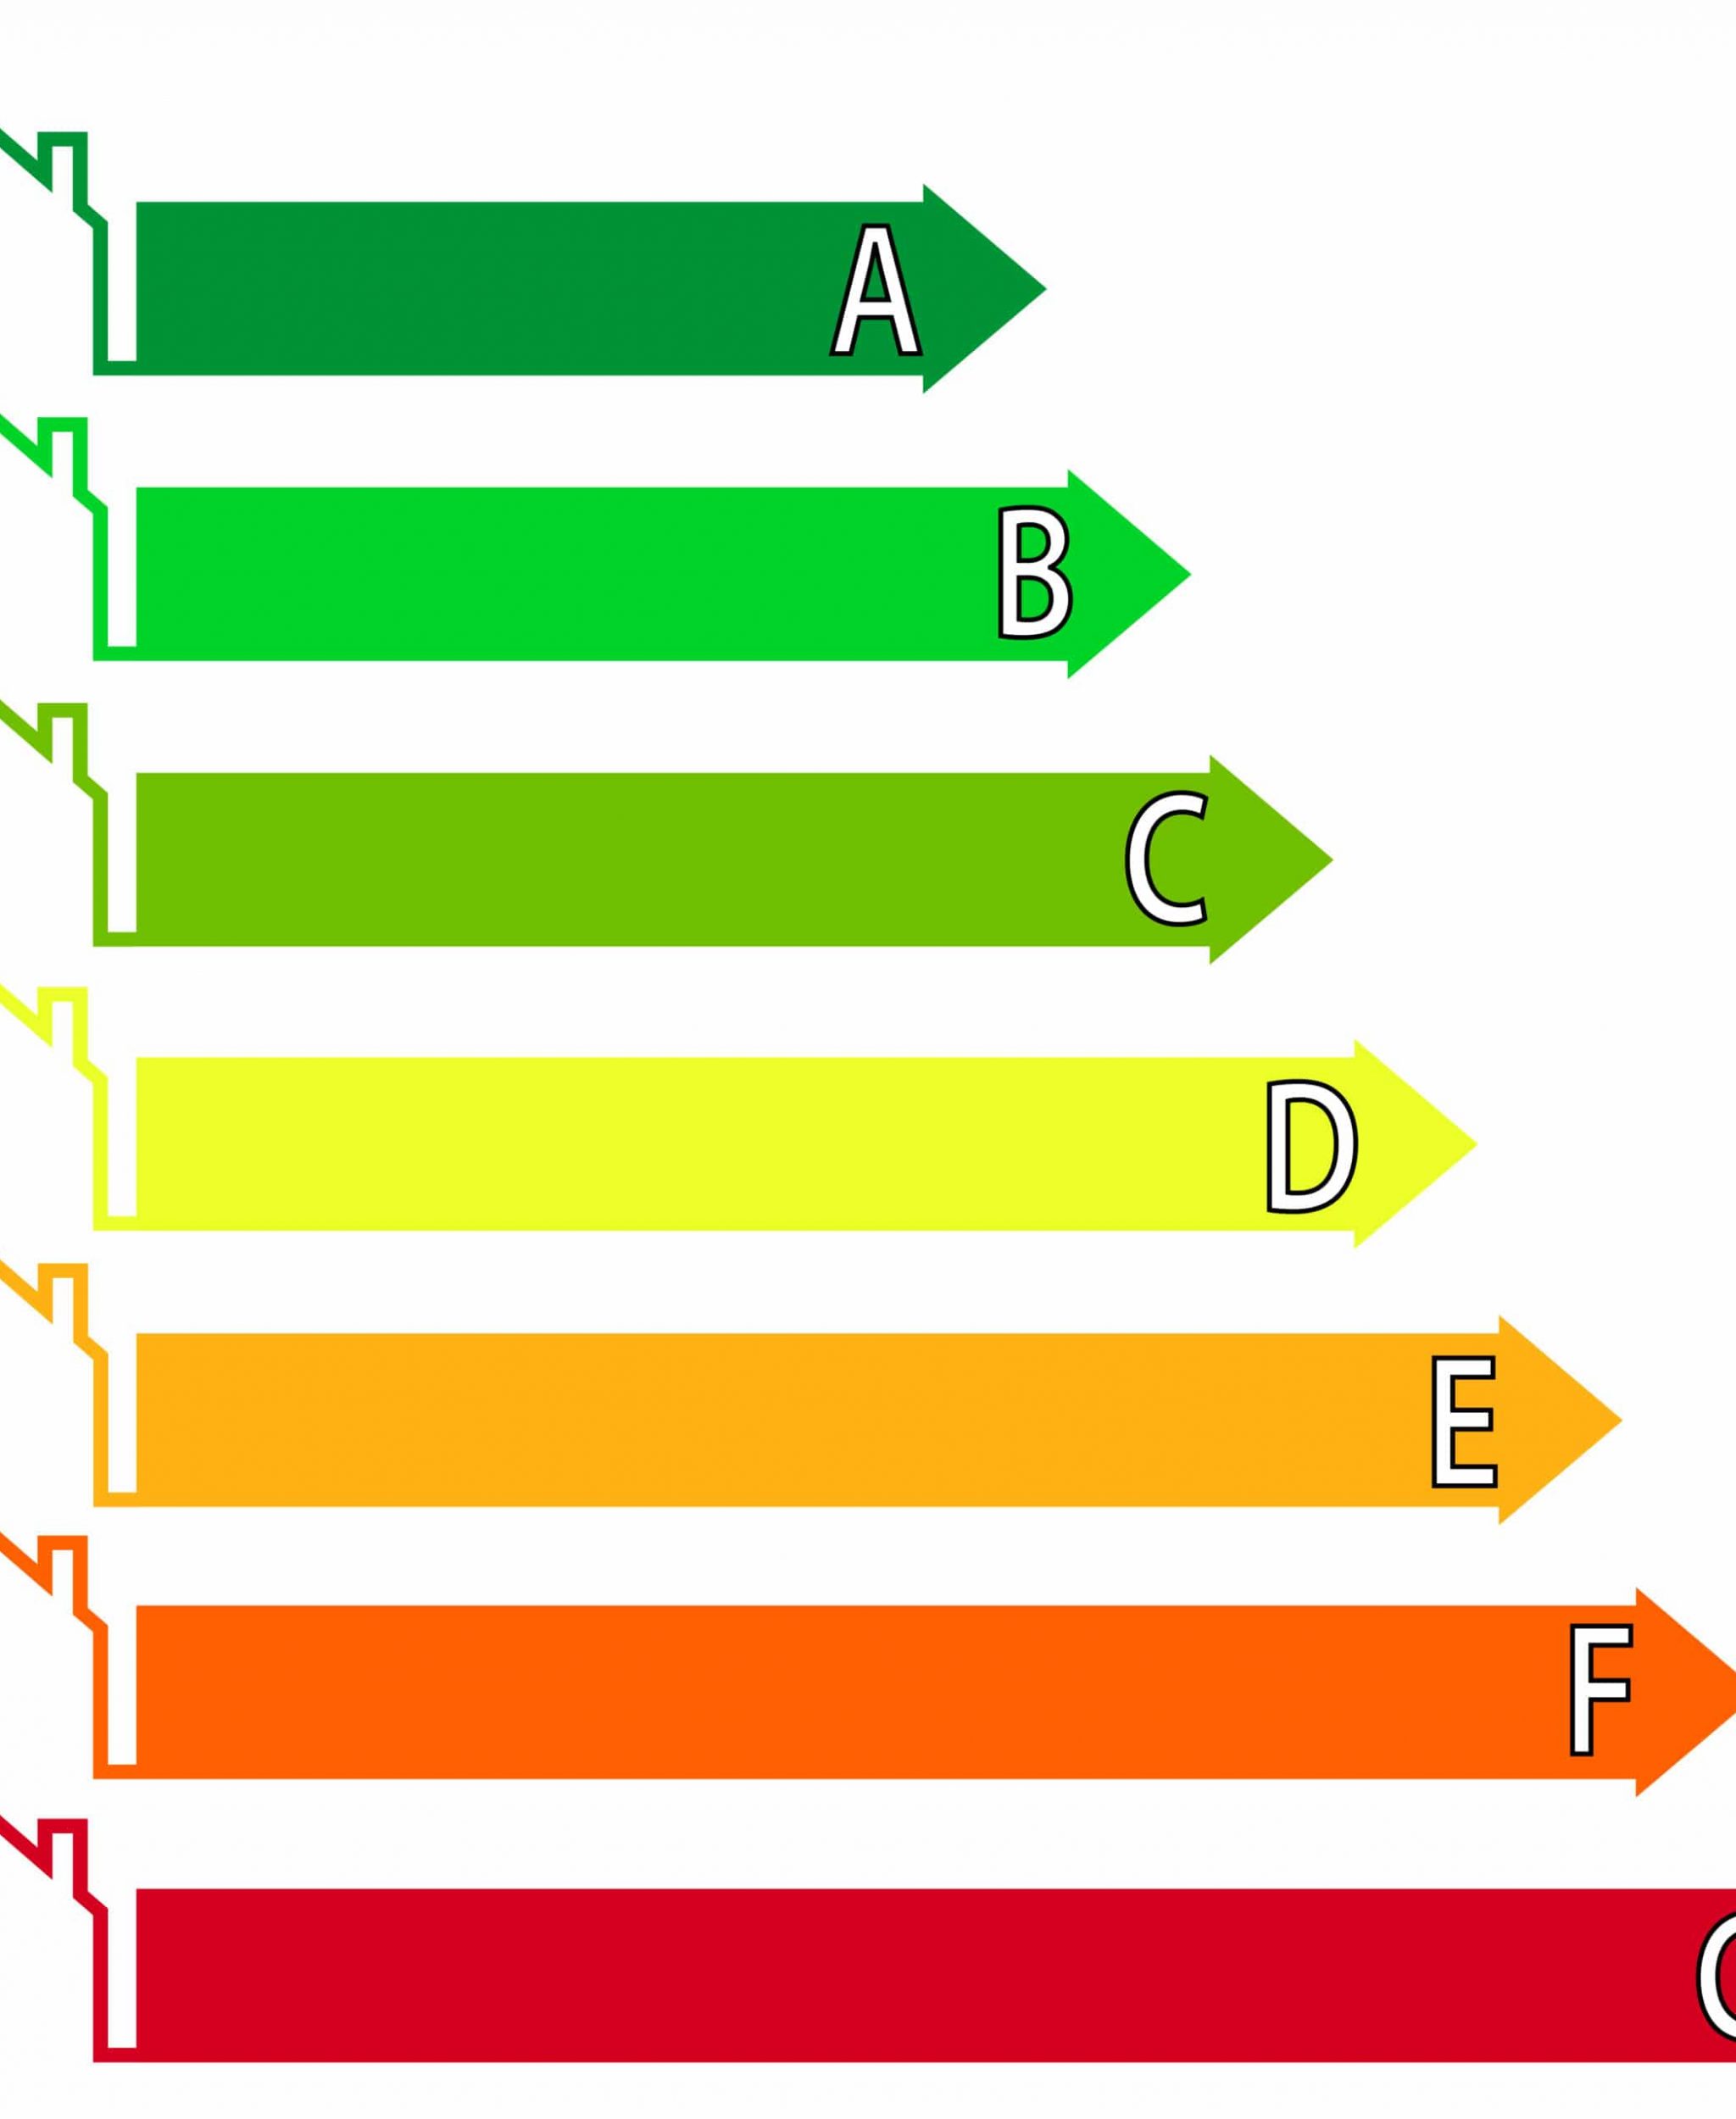 Buildings Energy Performance Scale. Energy efficiency